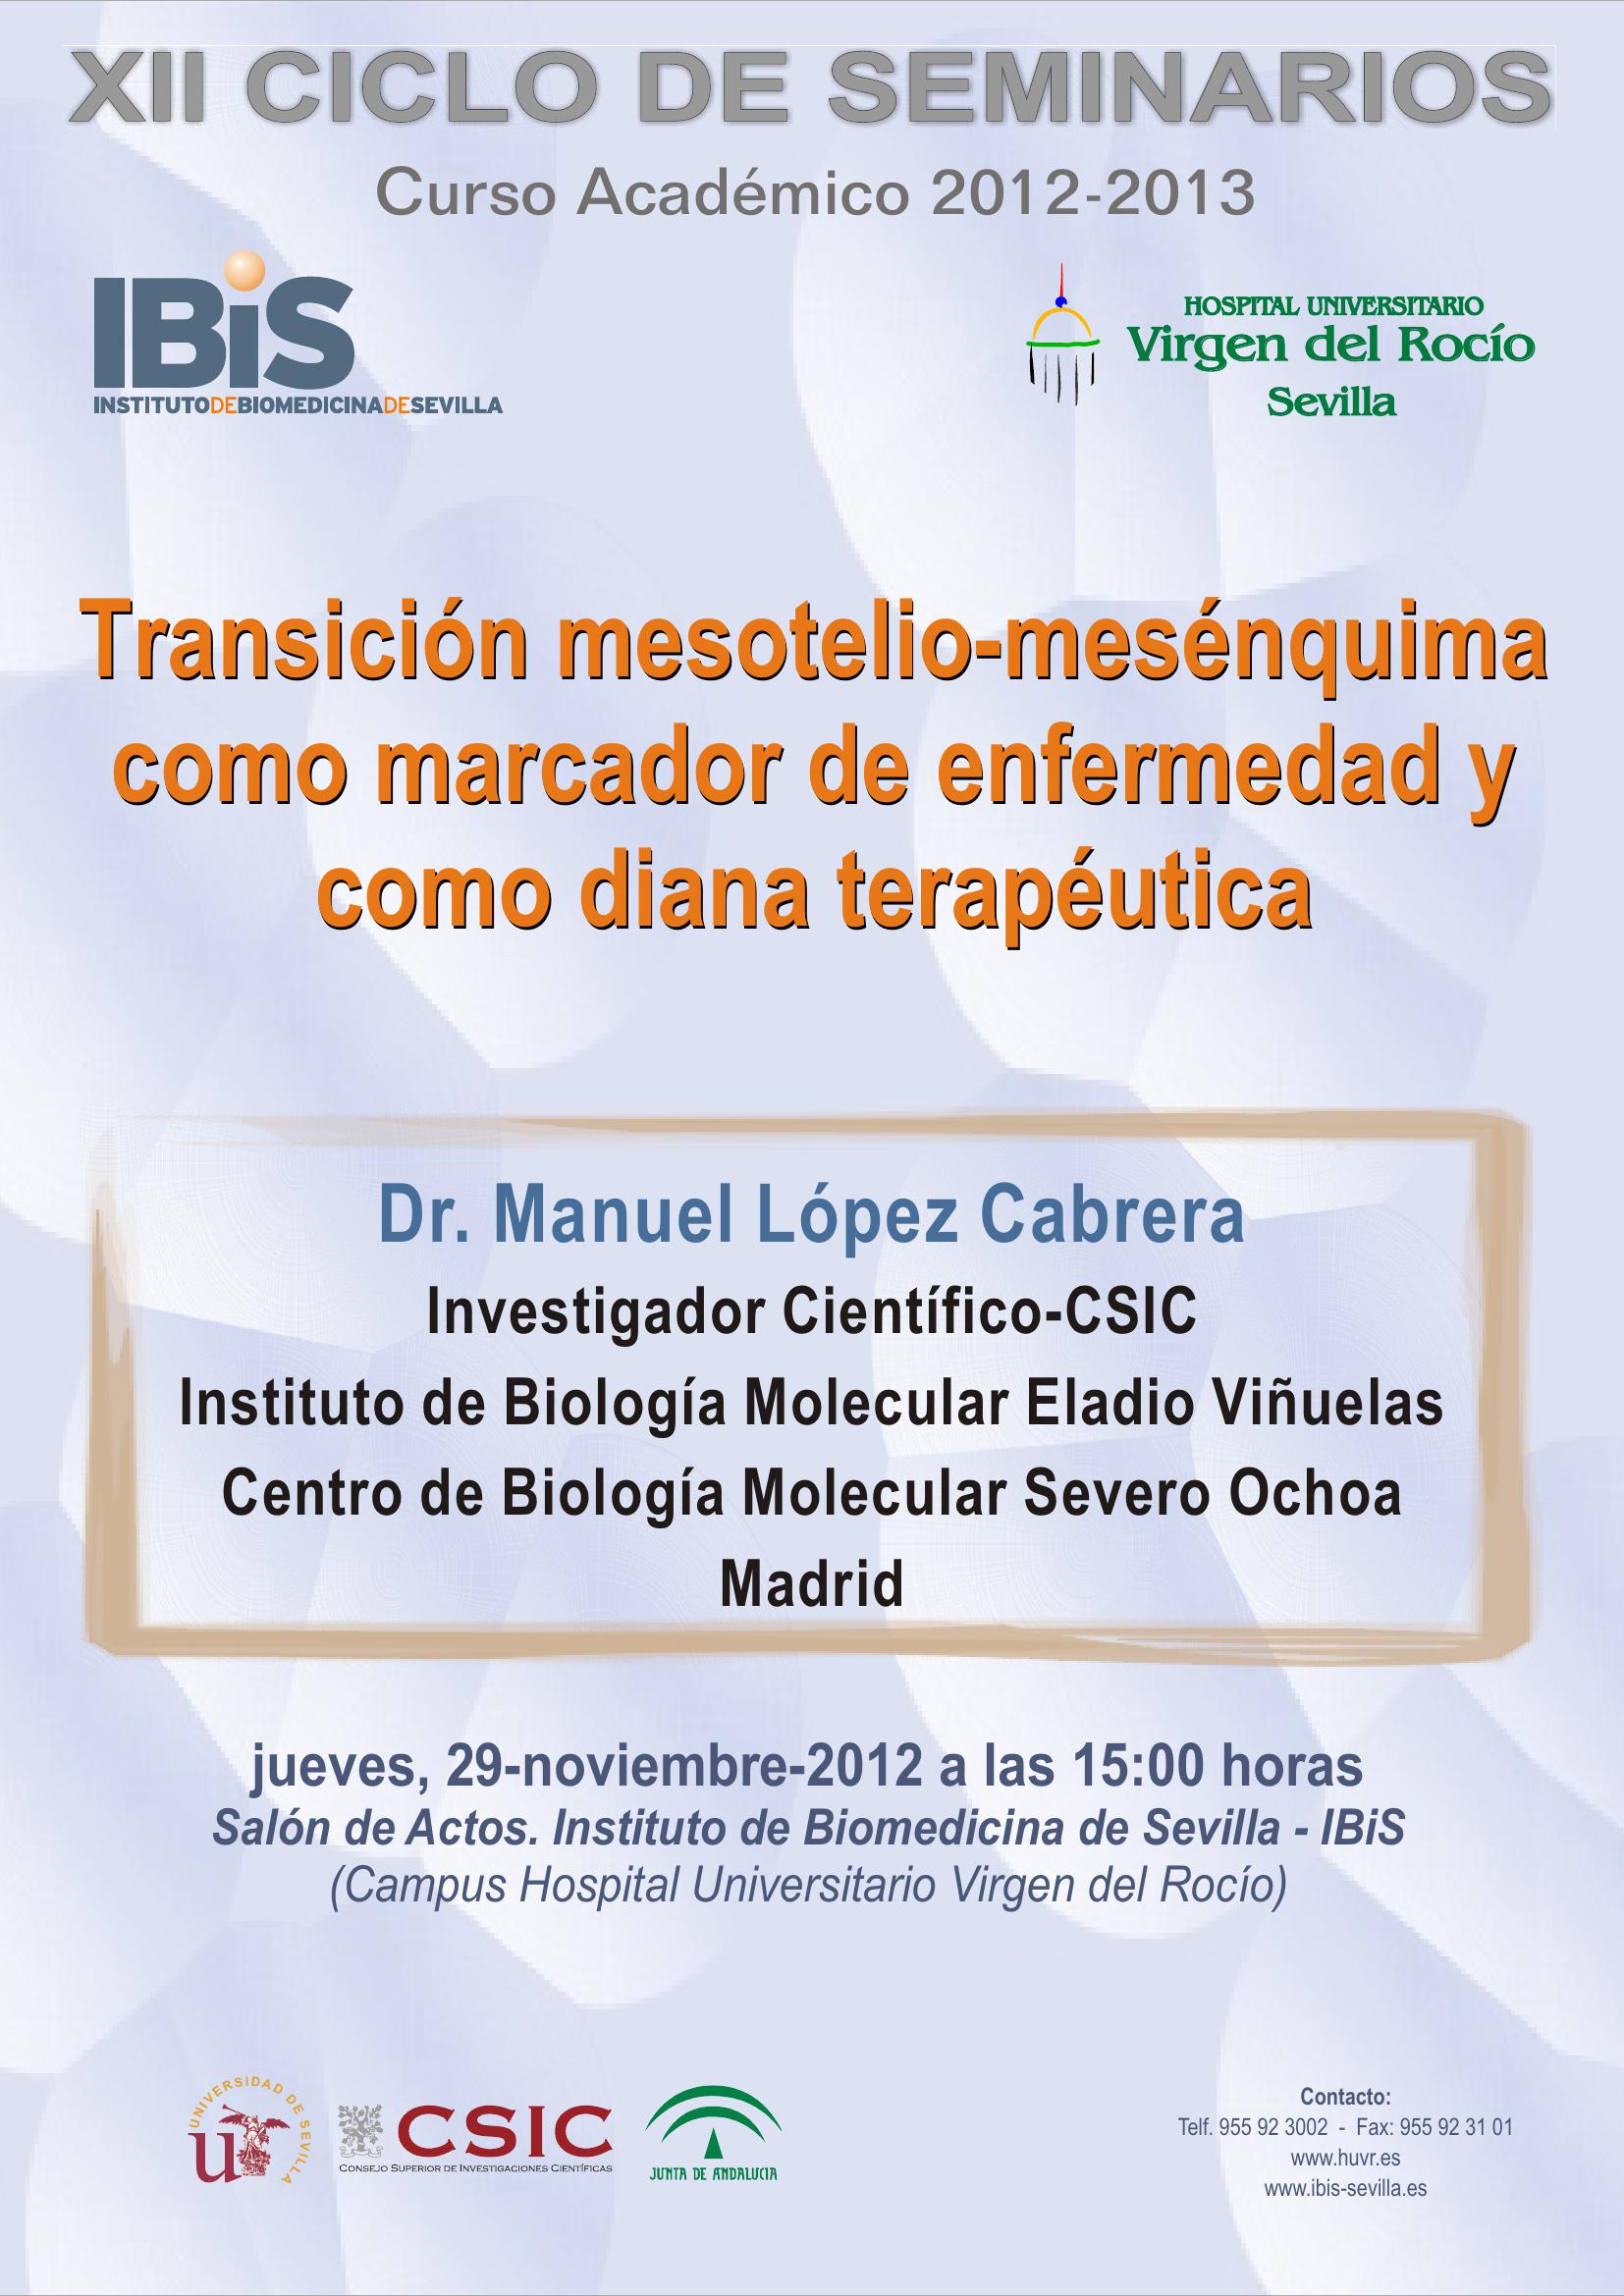 Poster: Transición mesotelio-mesénquima como marcador de enfermedad y como diana terapéutica.